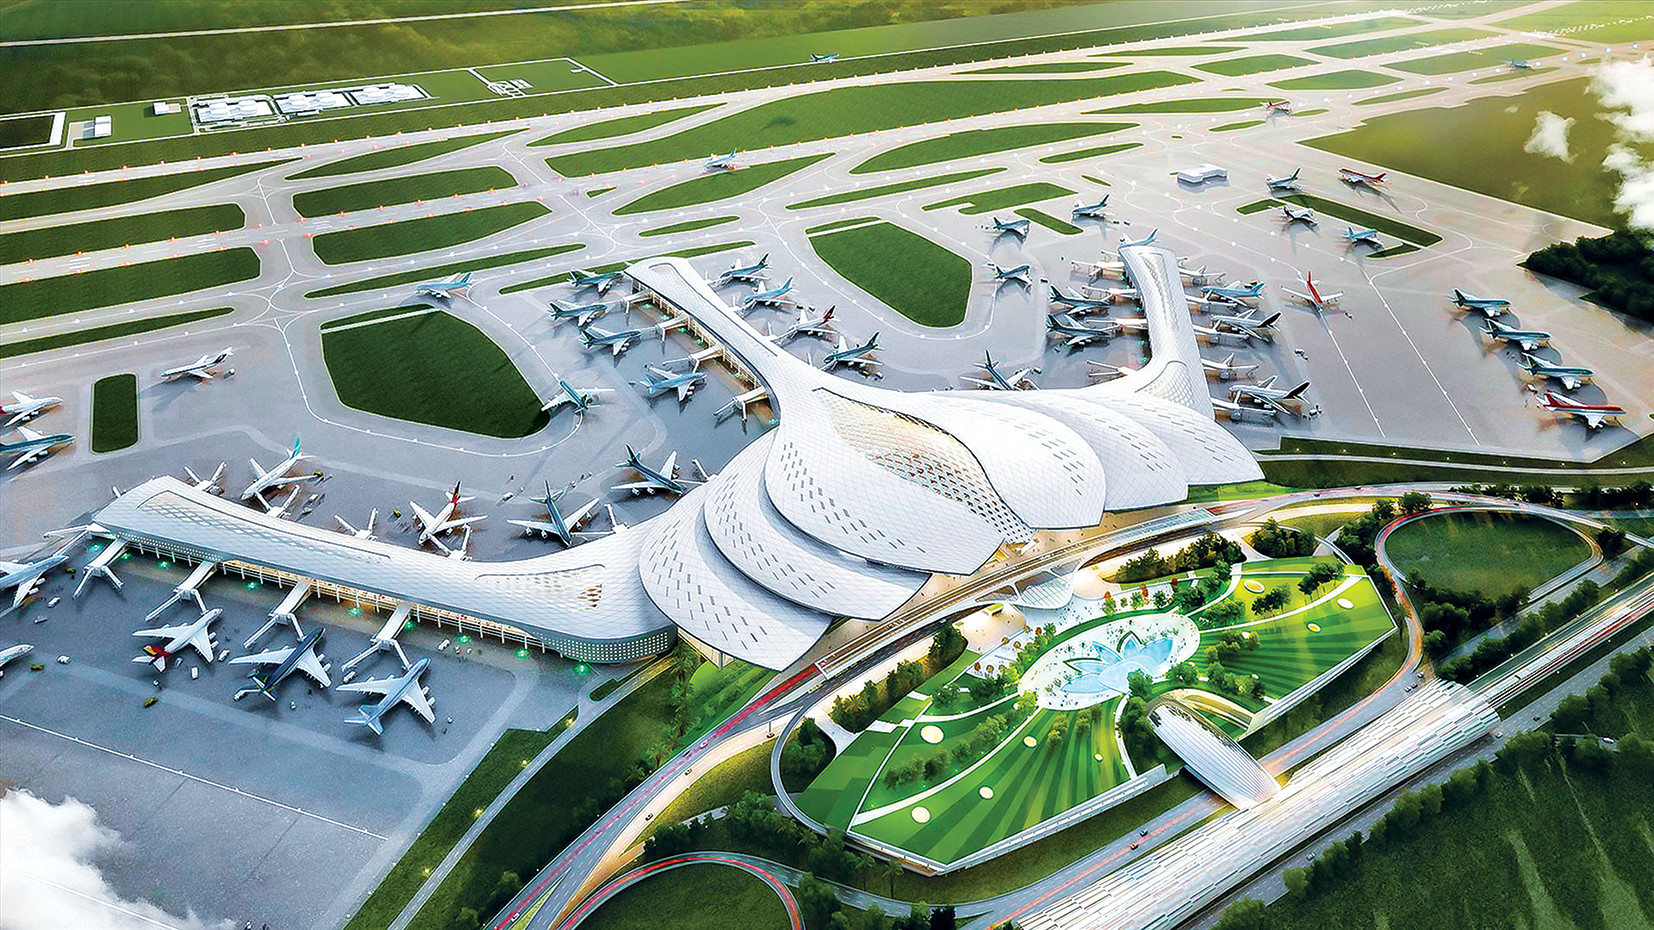 Sân bay Long Thành đang được xây dựng và sẽ trở thành cầu nối quan trọng cho tất cả các điểm đến trong và ngoài nước. Hãy chiêm ngưỡng những bức ảnh chân thực về quá trình thi công của sân bay Long Thành.